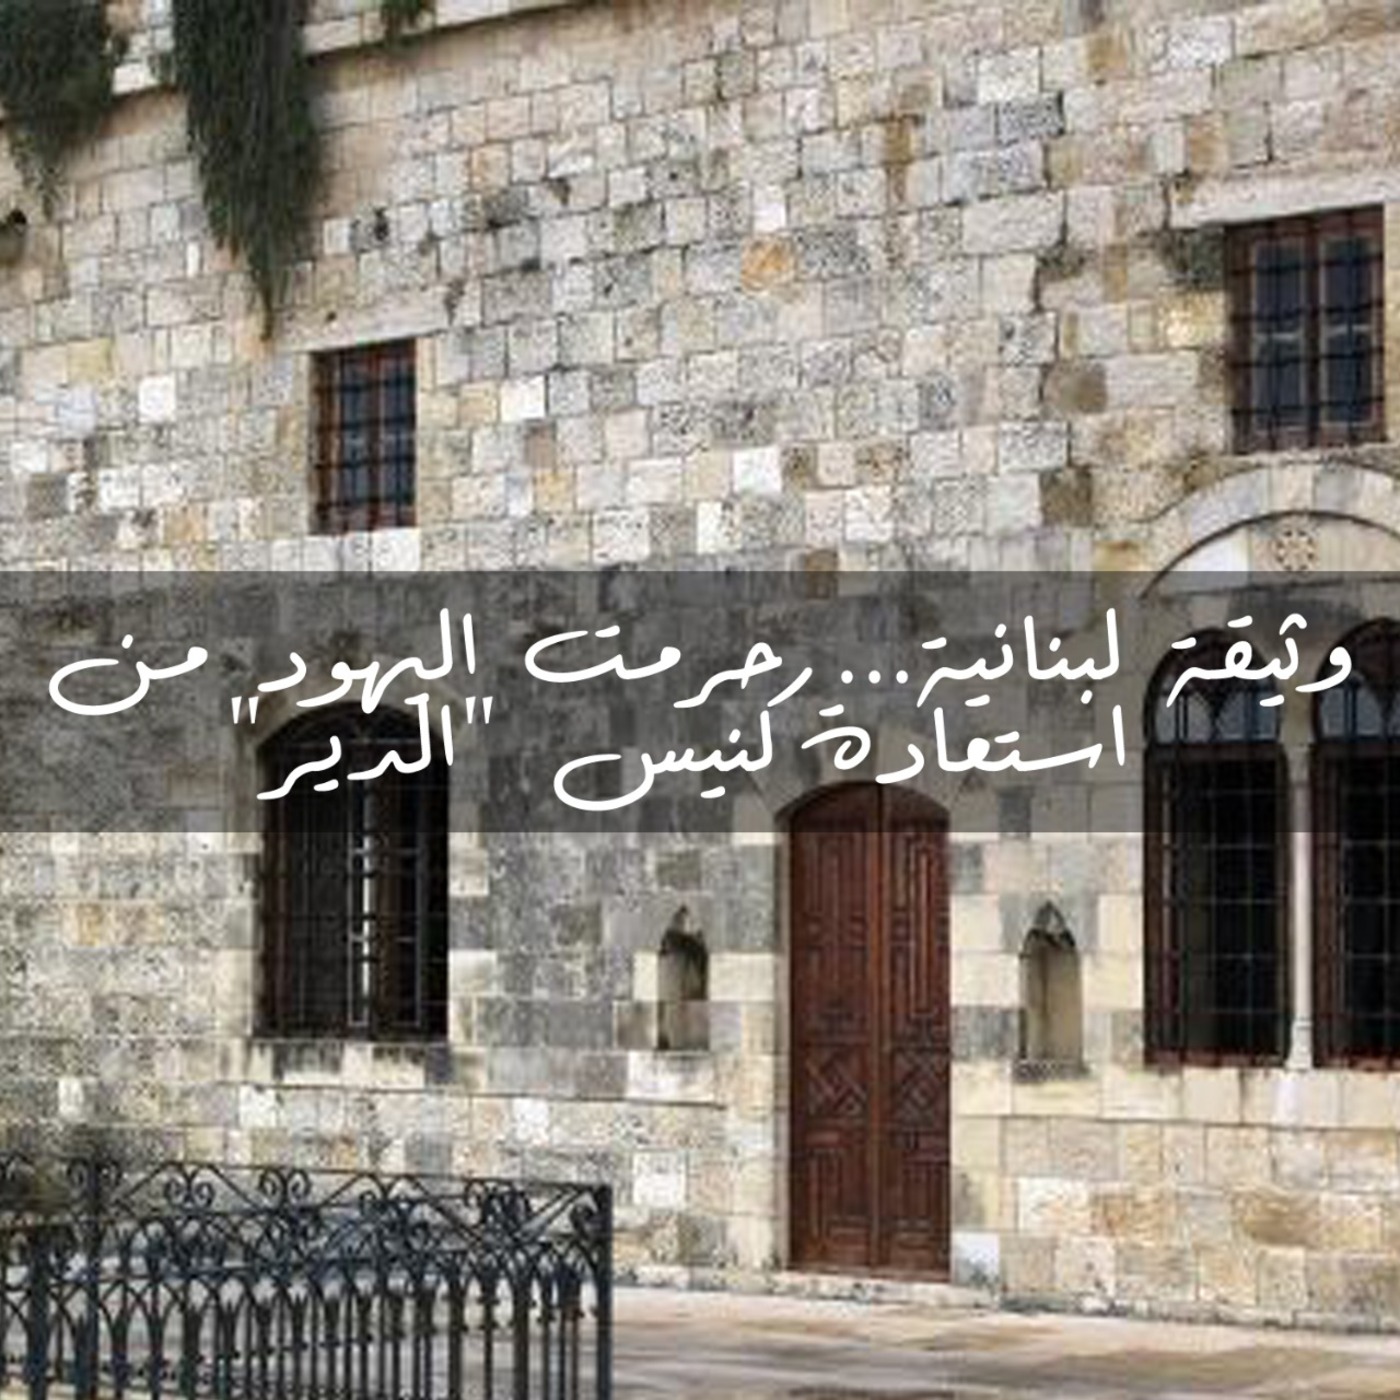 وثيقة لبنانية... حرمت اليهود من استعادة كنيس "الدير"